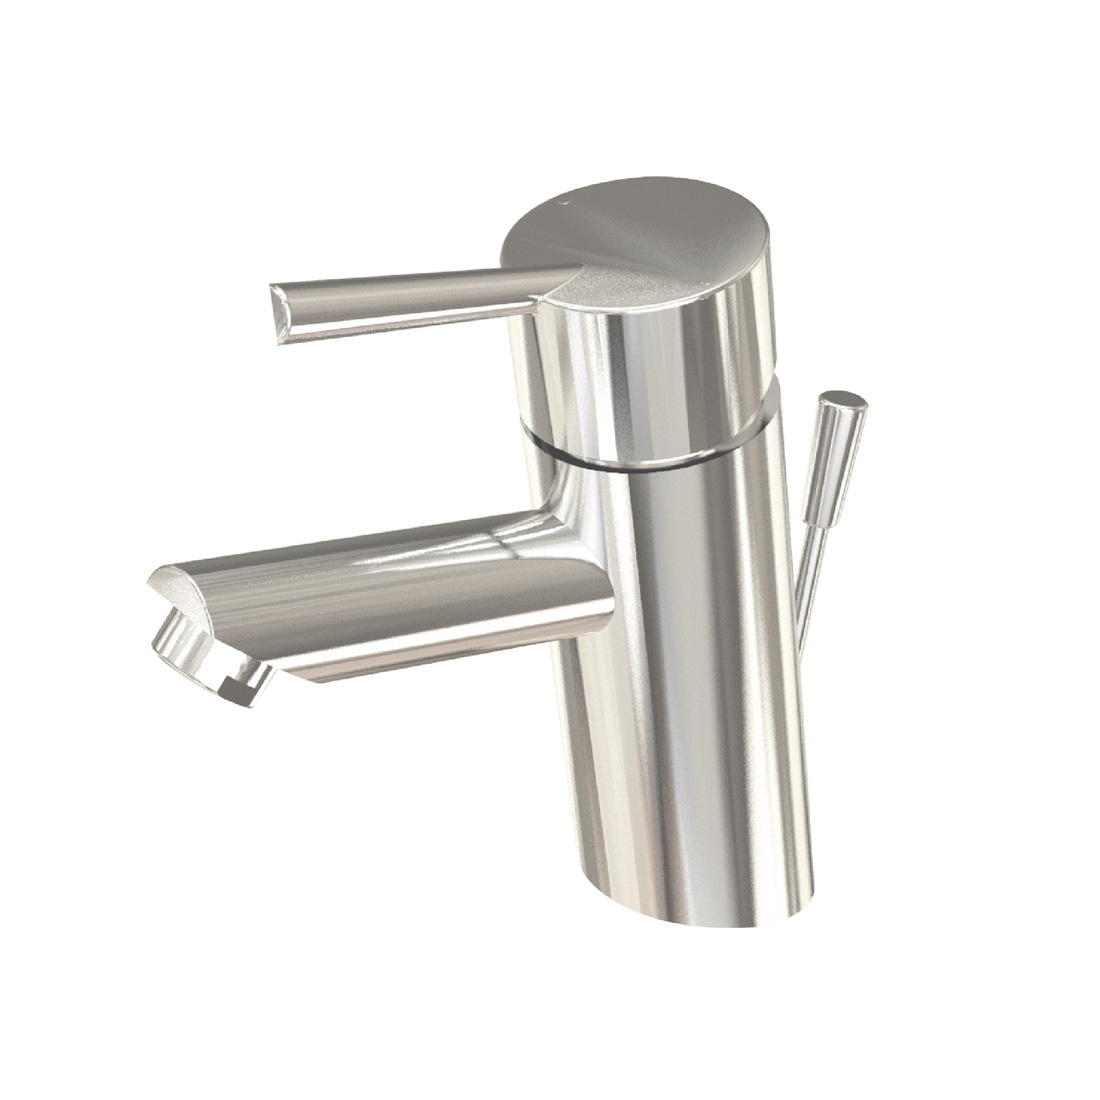 i2 Single Handle Bathroom Faucet Model #L-6050